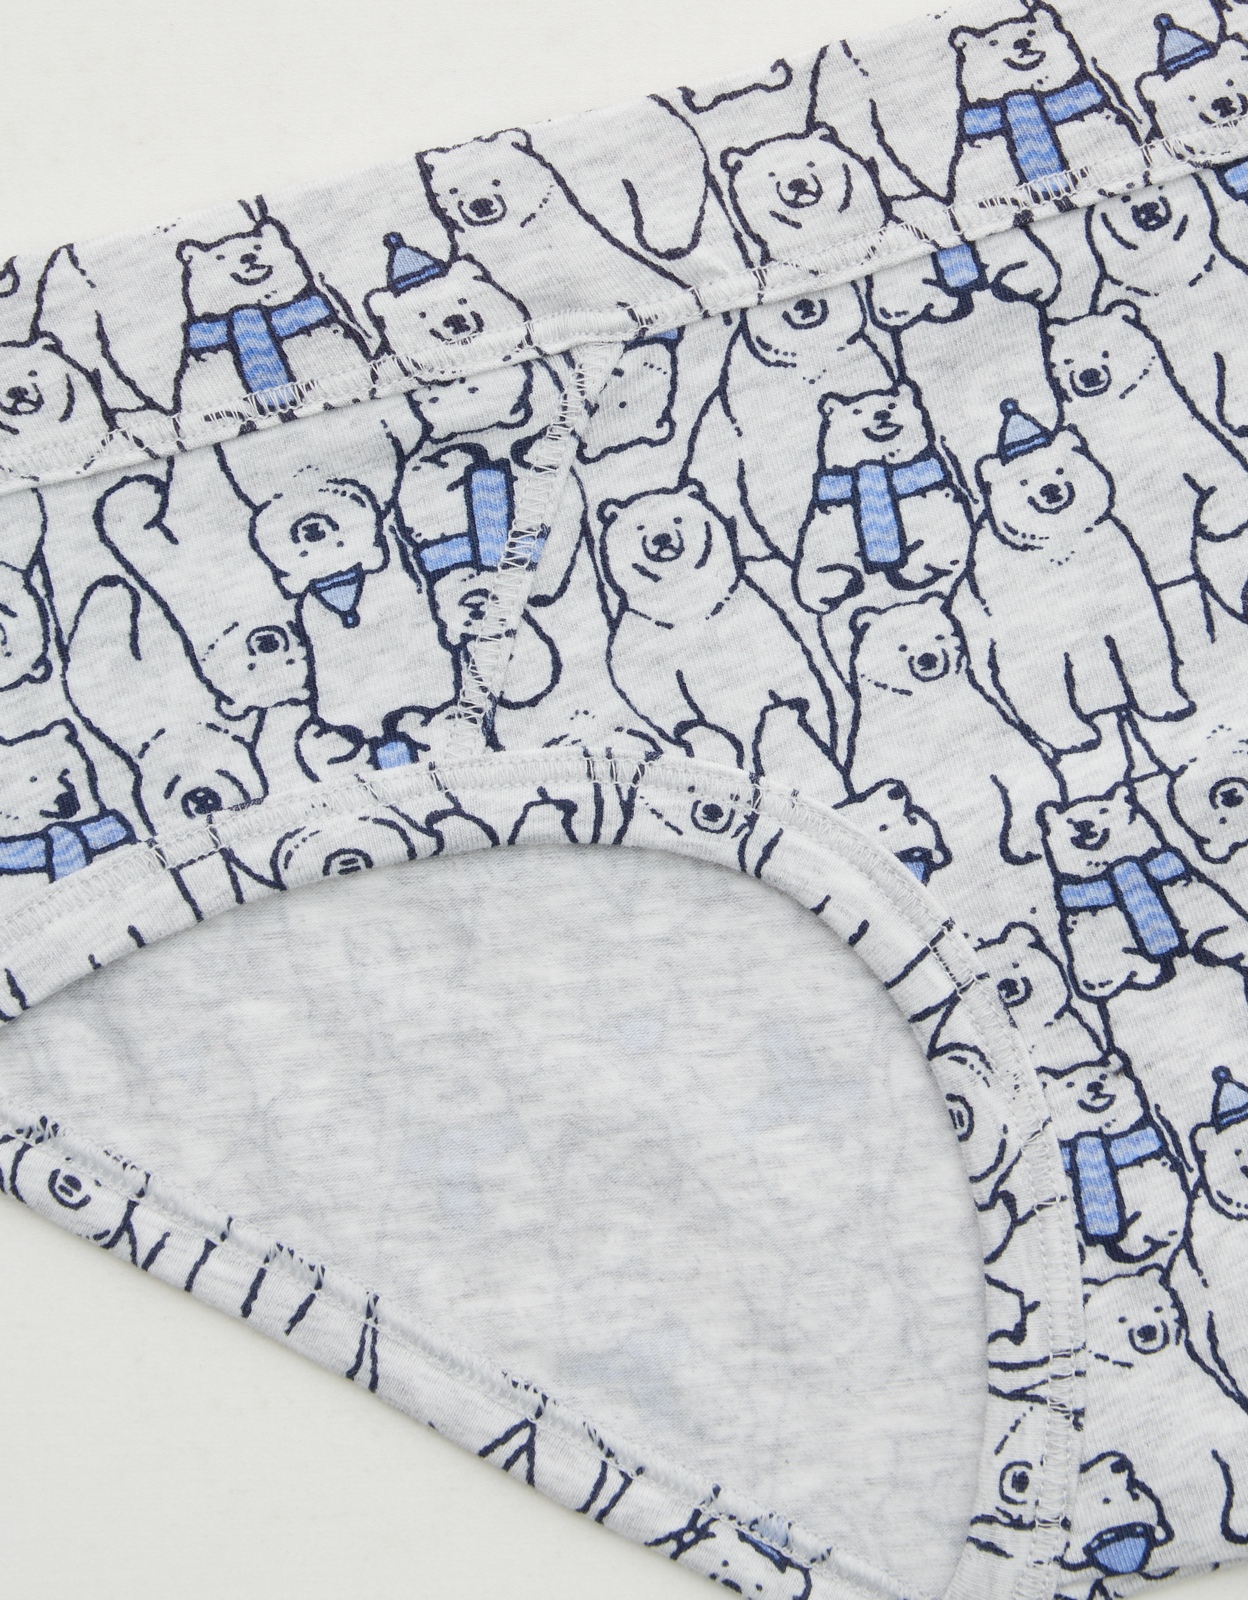 Shop Aerie Cotton Tonal Stitching Boybrief Underwear online